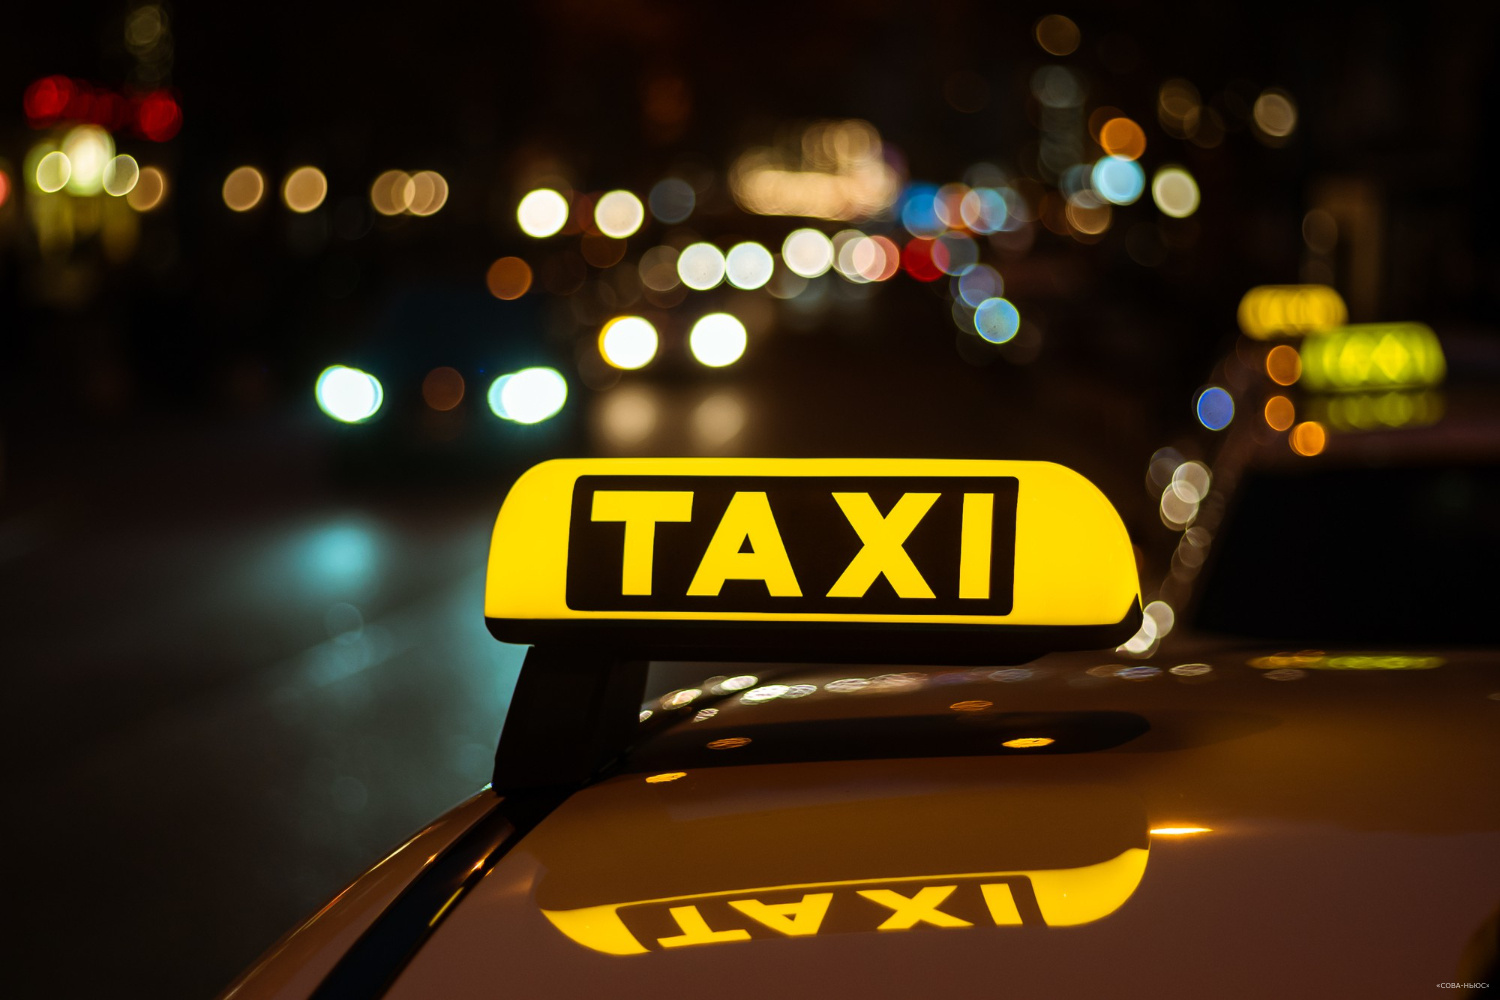 Услуги такси в 2023 году вырастут на 20%